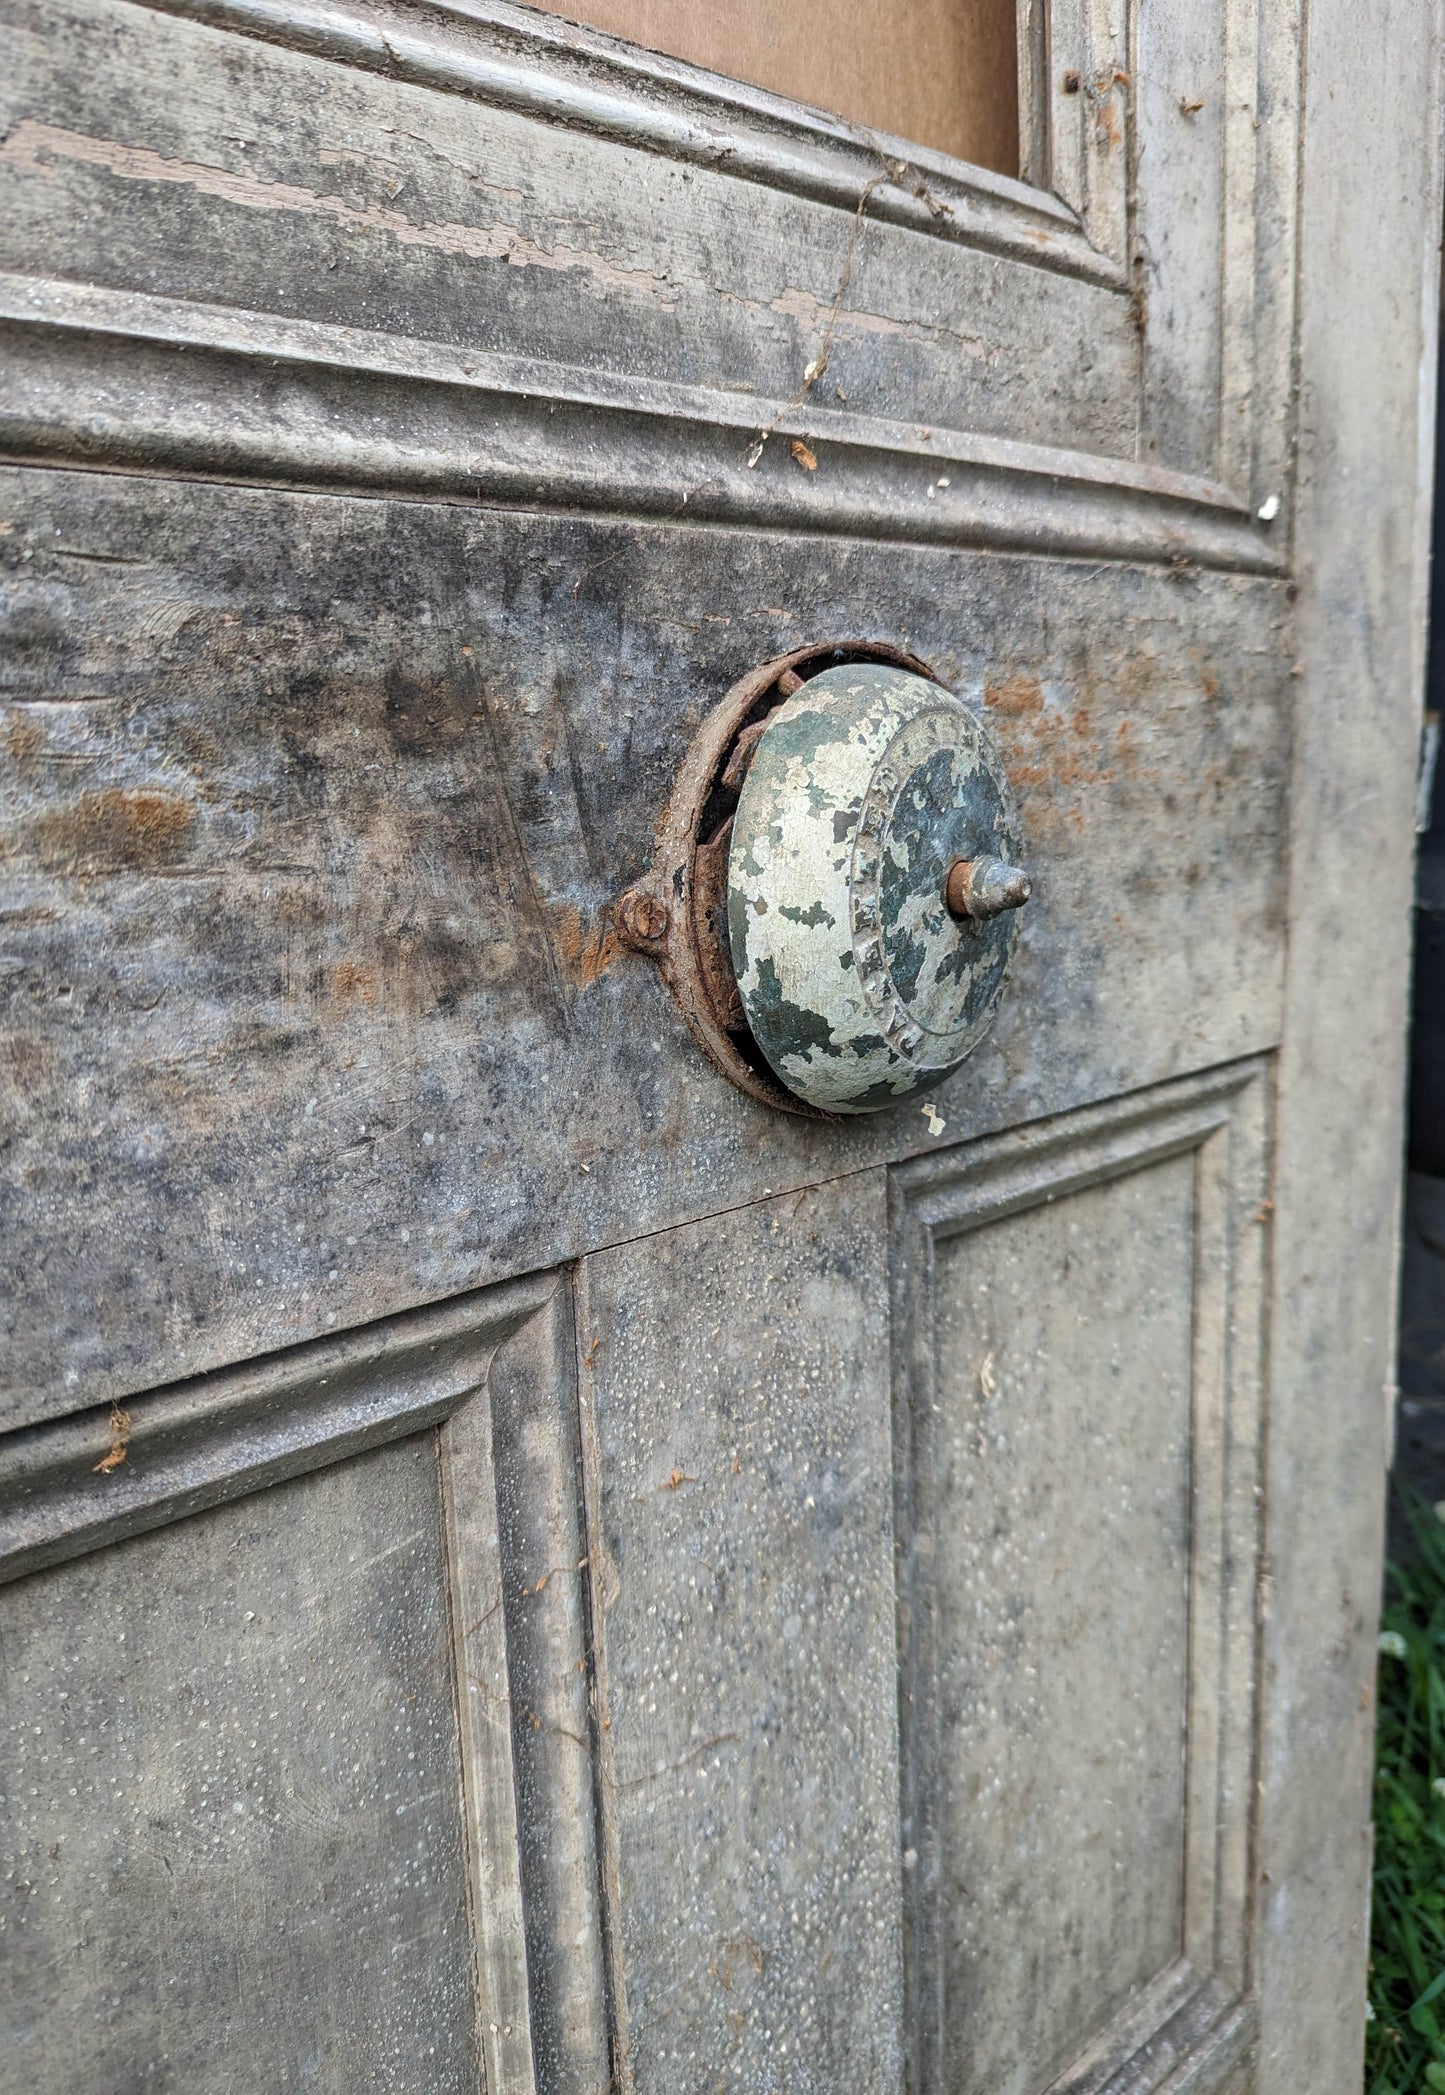 Cleaned Antique Vintage Old Eastlake Victorian Solid Heavy Cast Bronze Doorbell Door Bell Ringer Lever Turn Crank